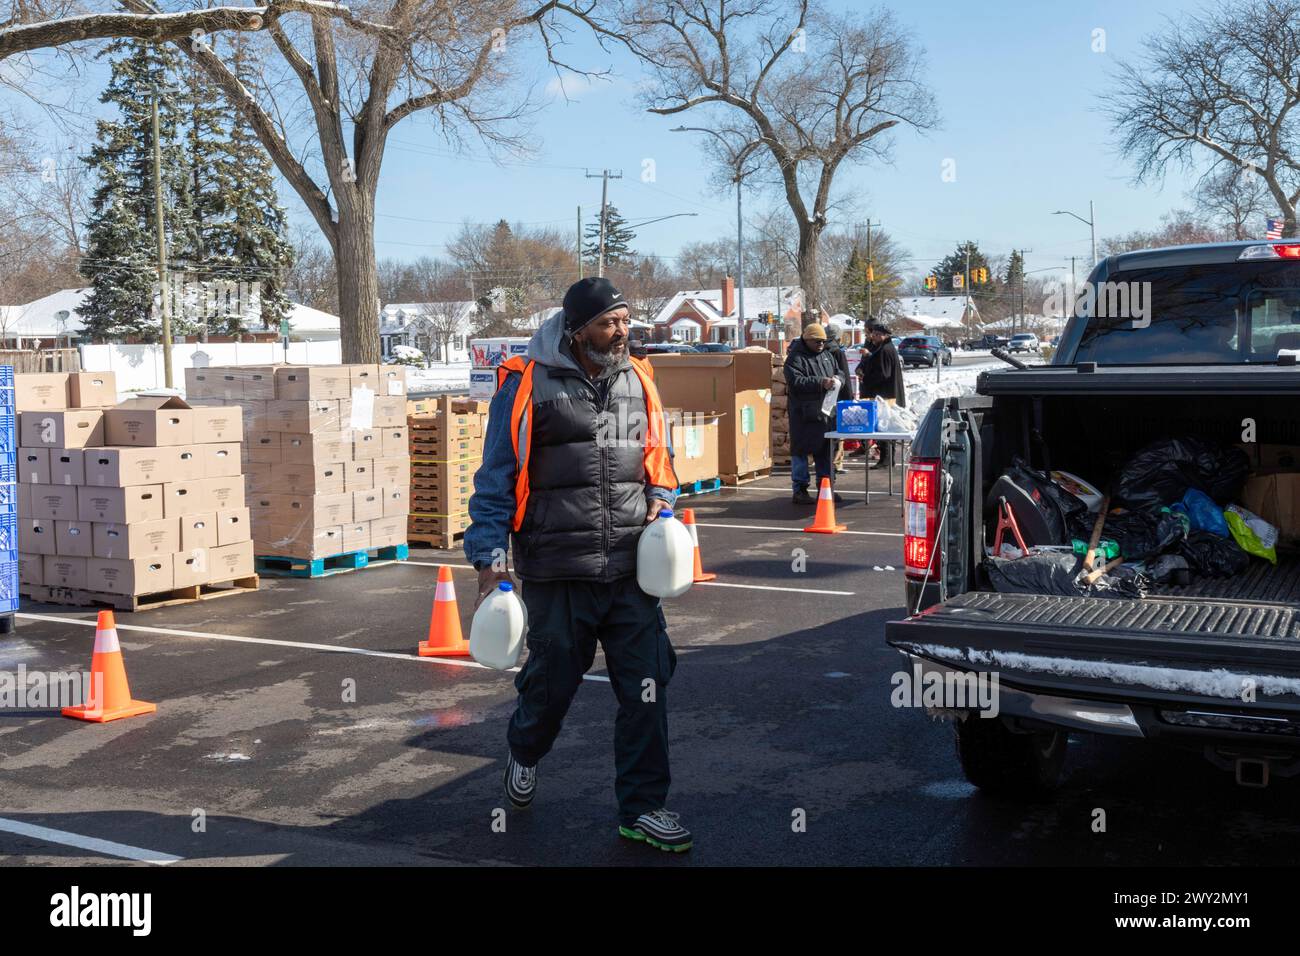 Detroit, Michigan - de la nourriture gratuite est distribuée aux personnes qui assistent à une foire communautaire sur la santé. Banque D'Images